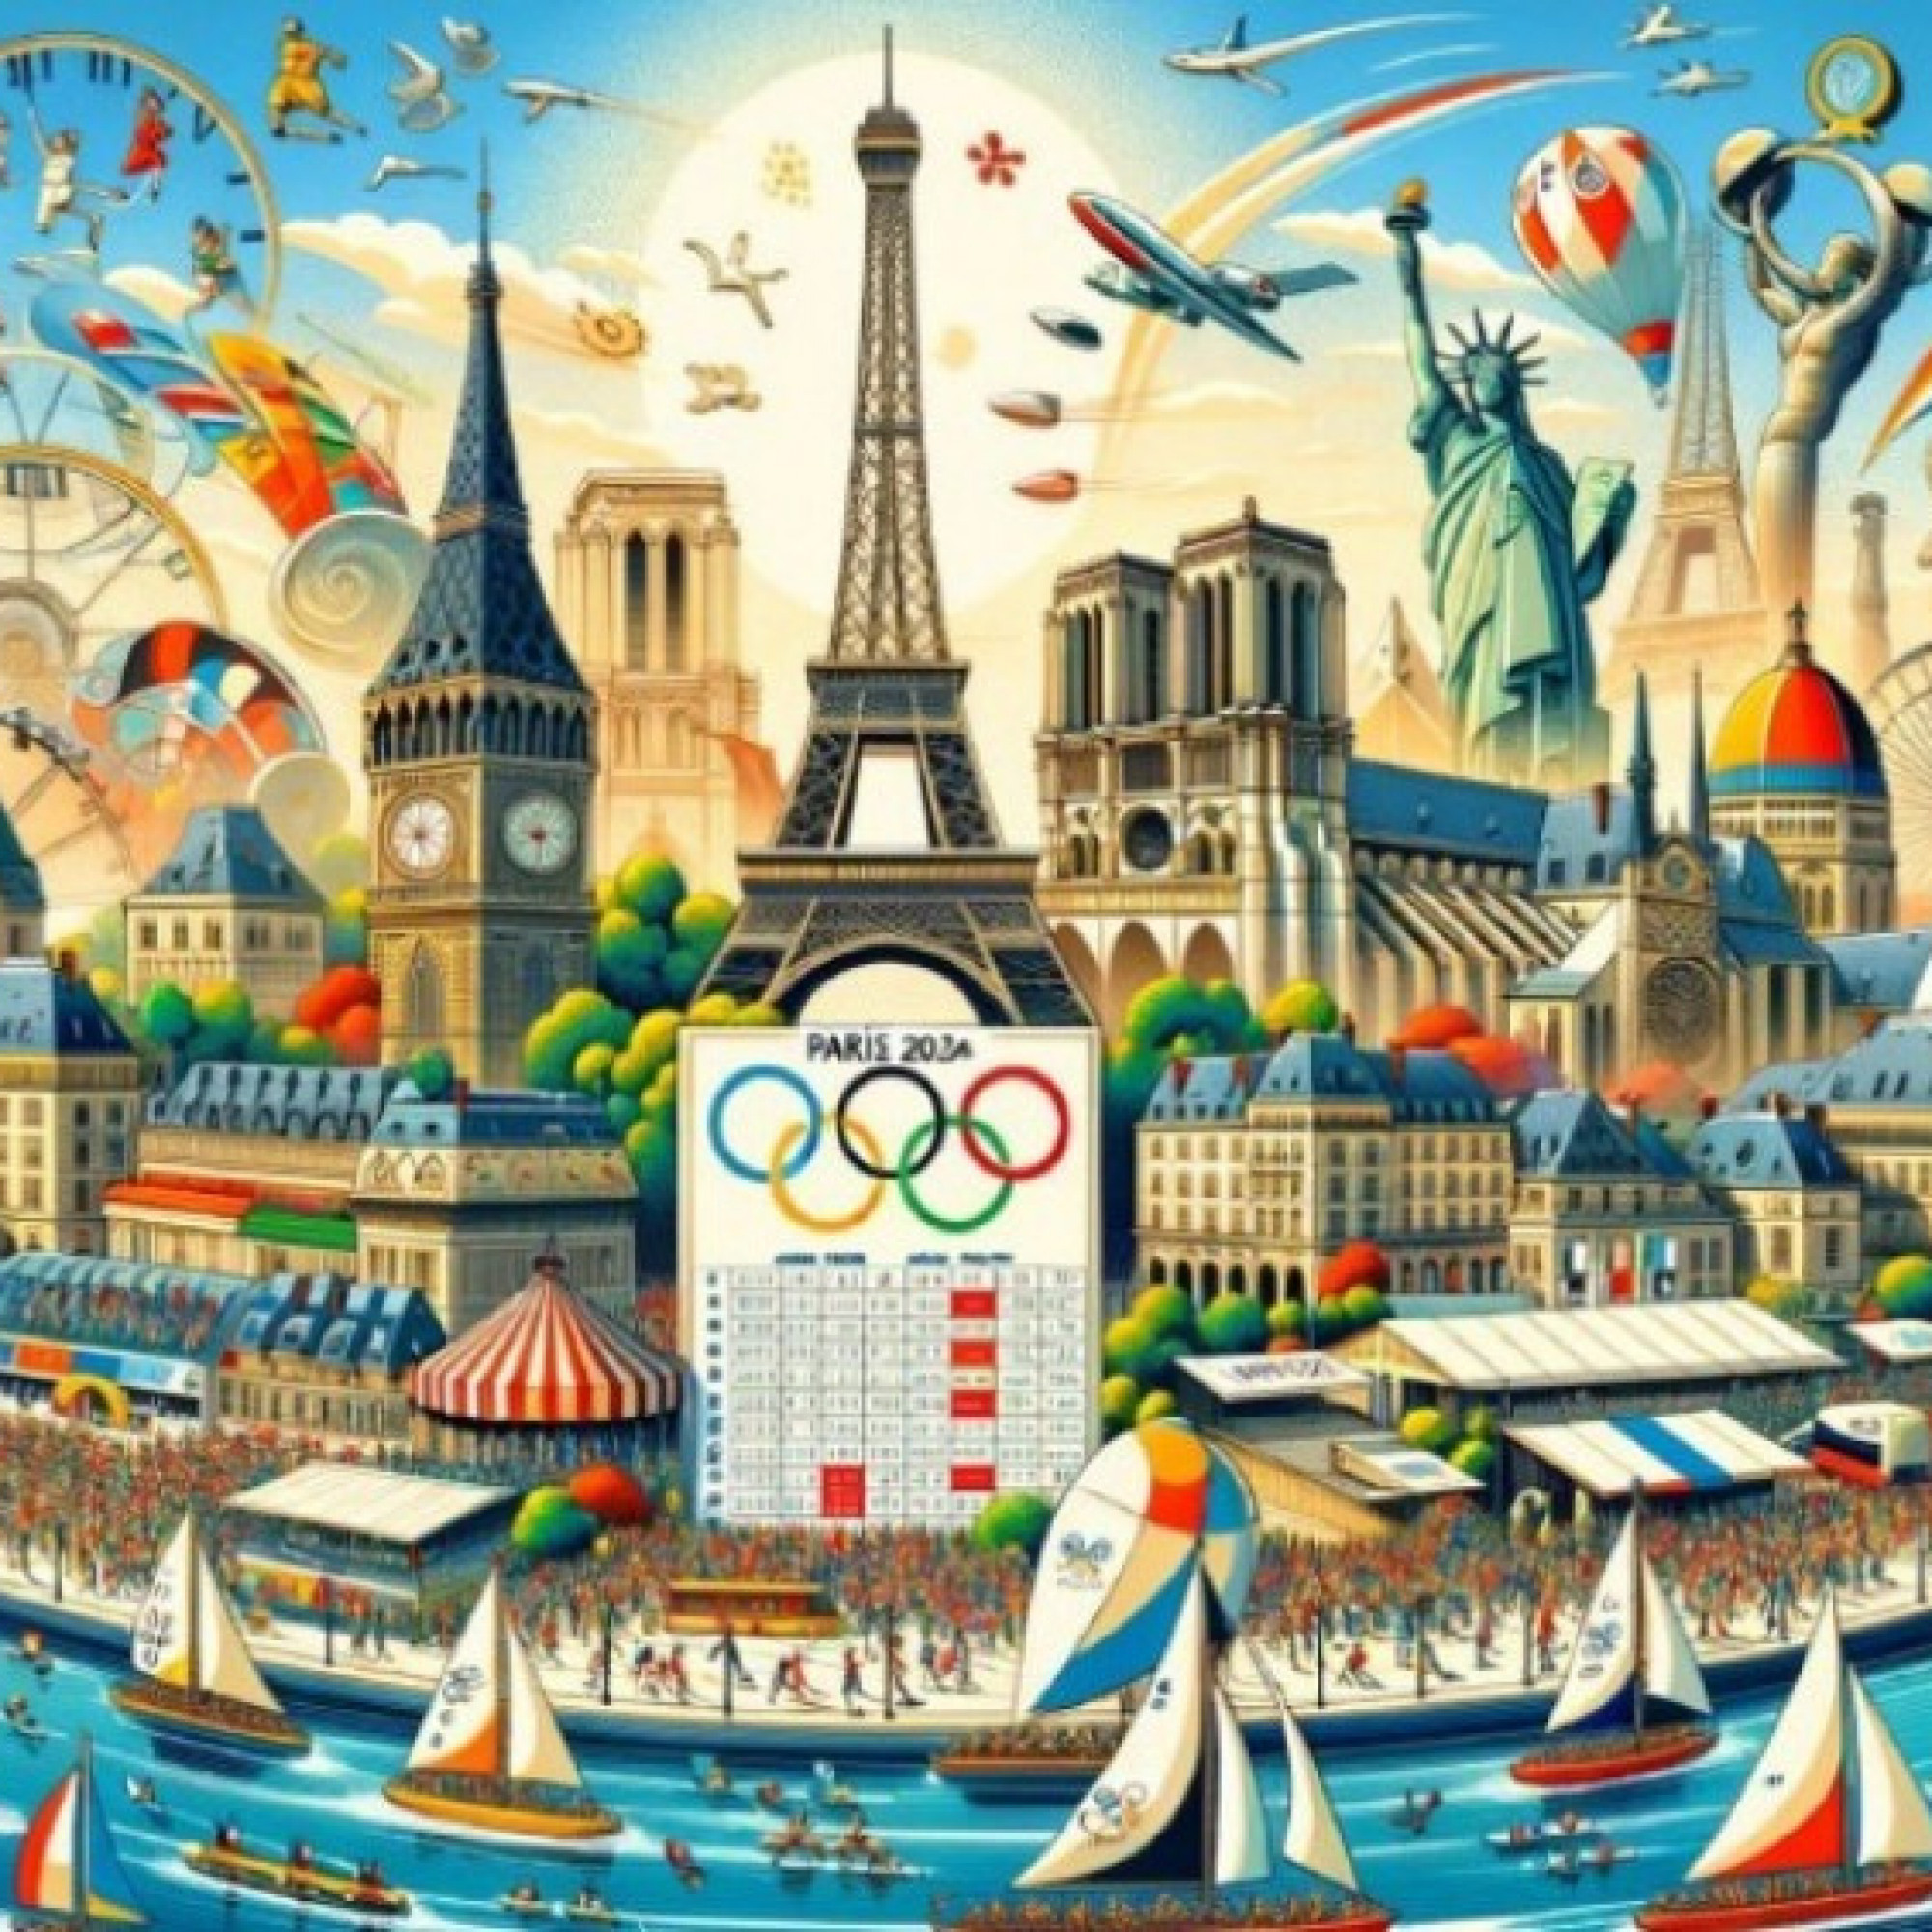 Lịch thi đấu các môn thể thao tại Thế vận hội - Olympic 2024 mới nhất